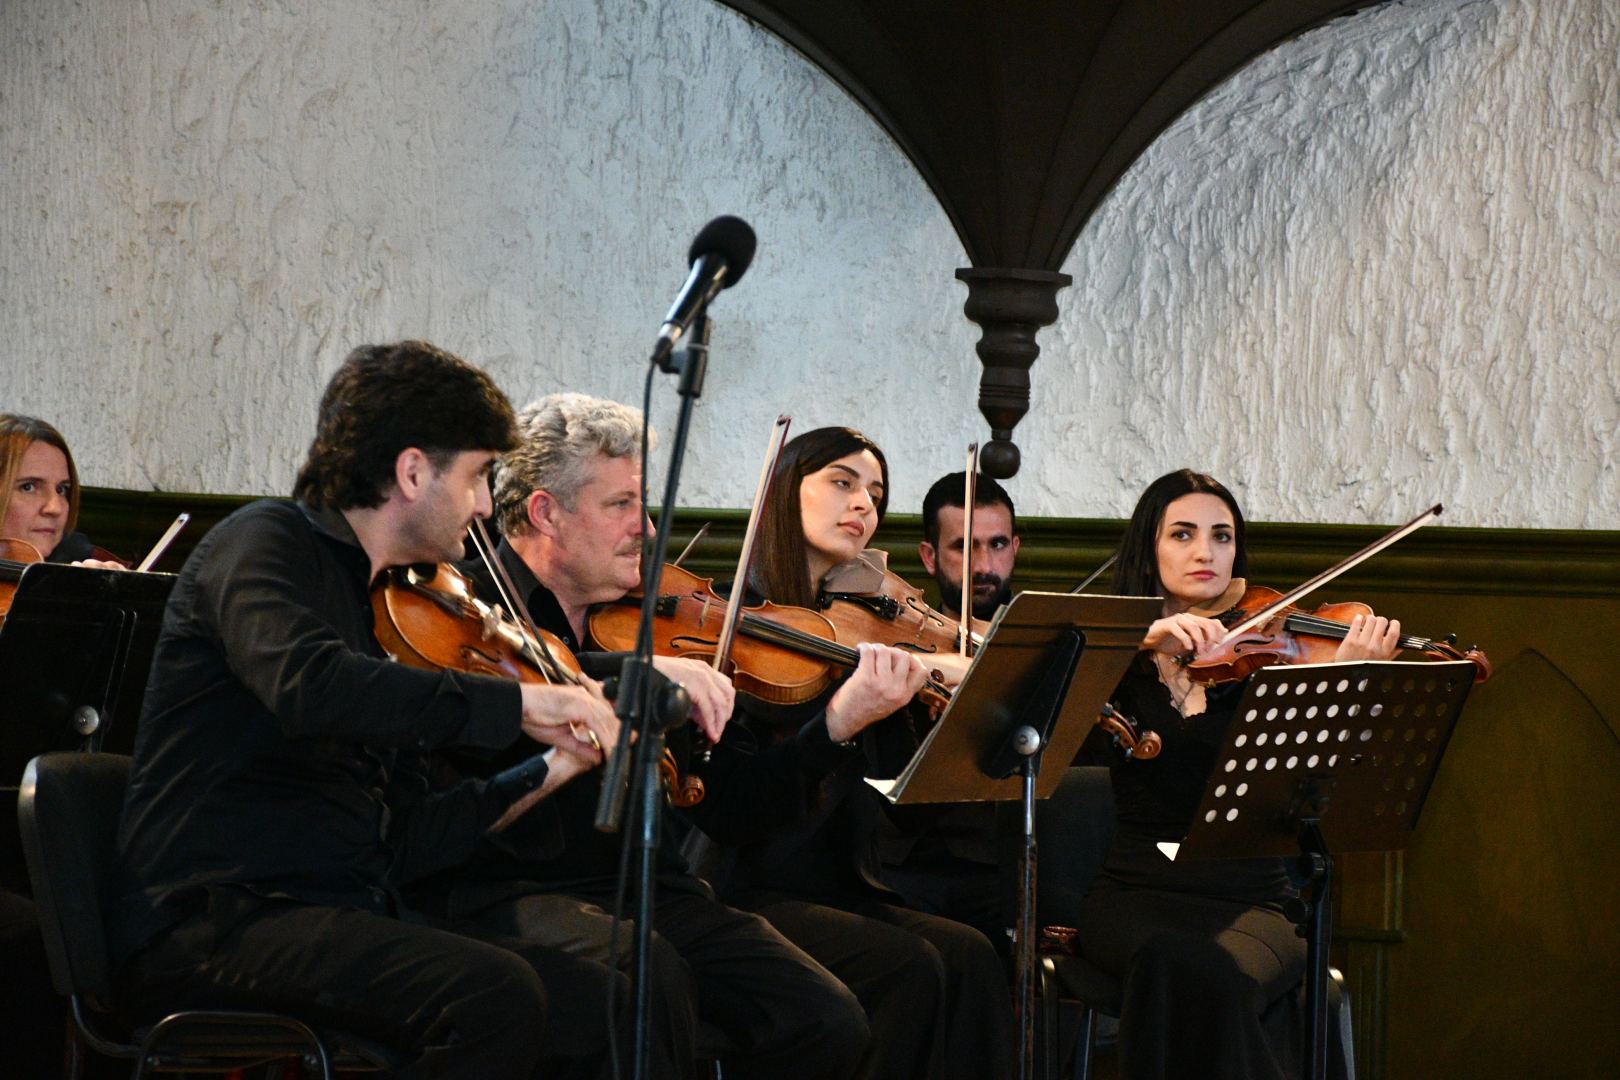 Azərbaycan Dövlət Kamera Orkestrinin konserti olub (FOTO/VİDEO)